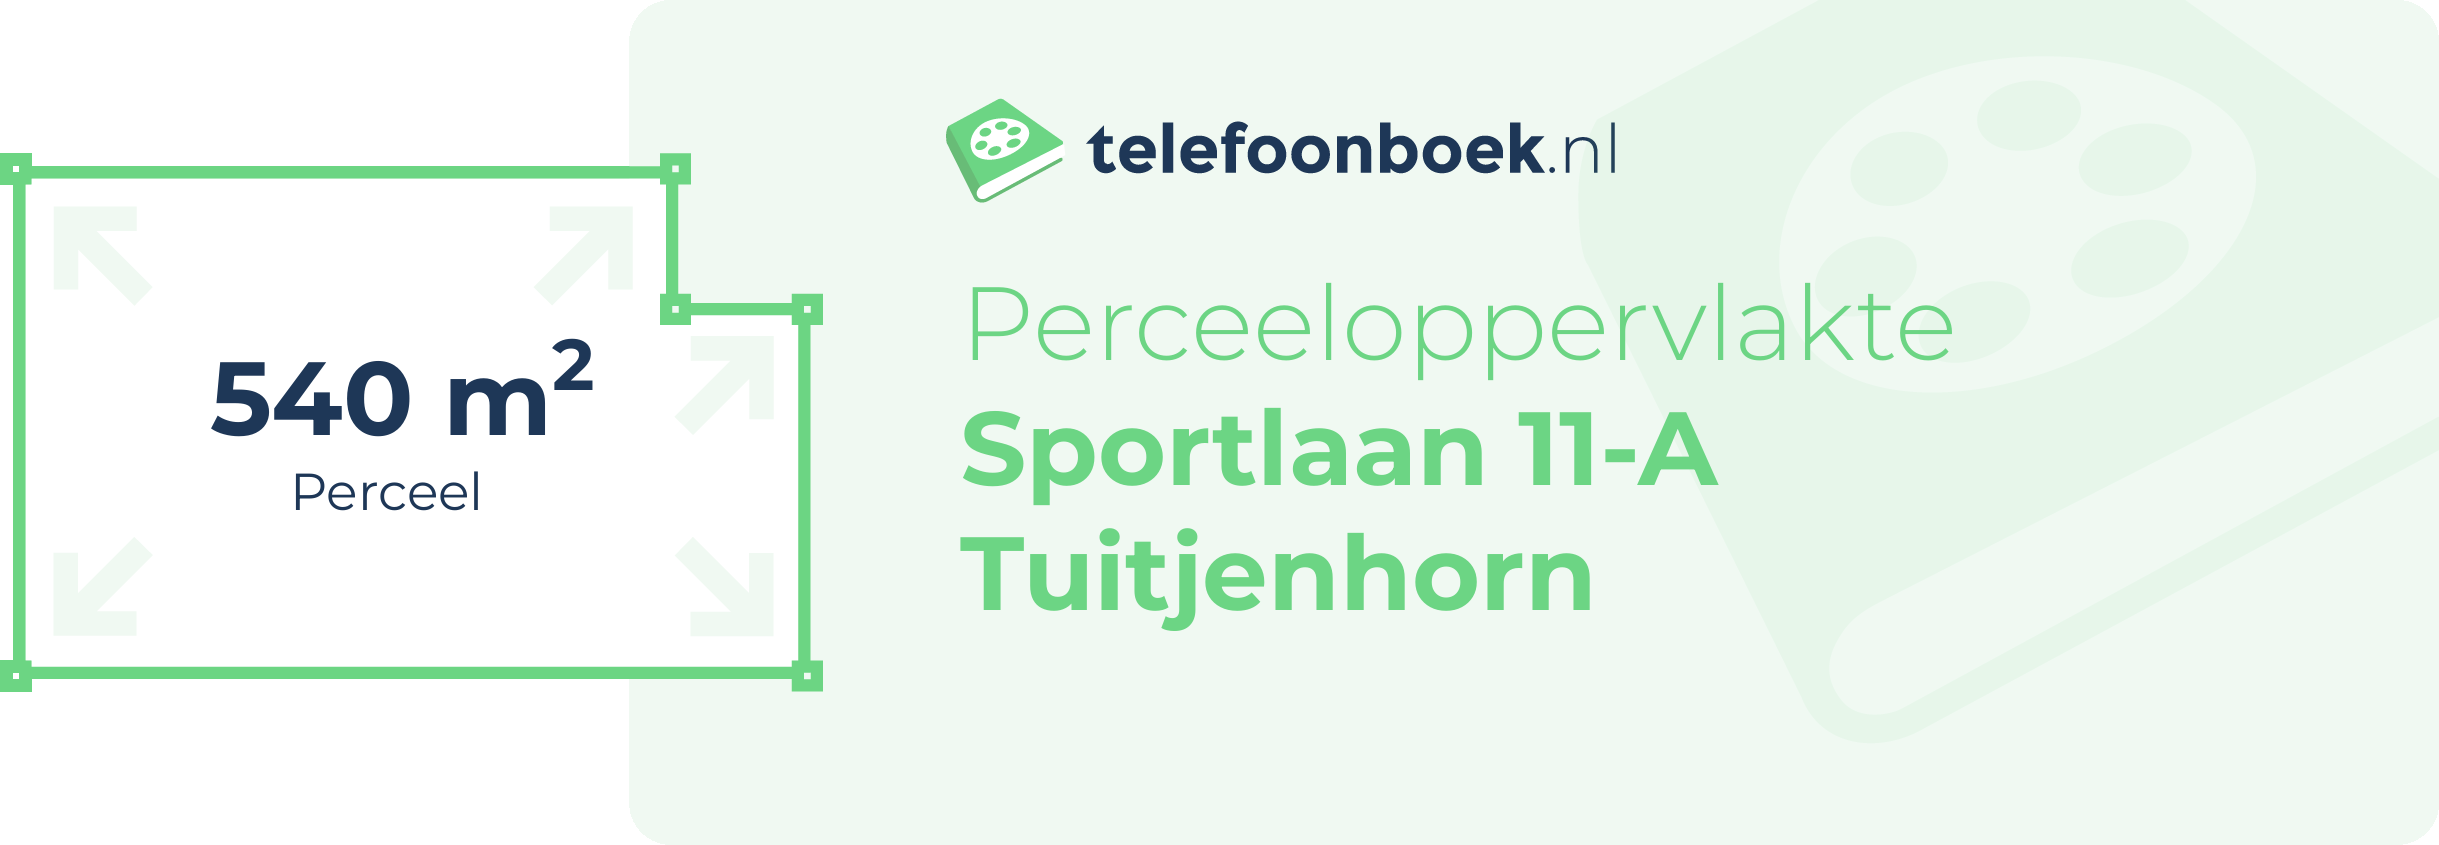 Perceeloppervlakte Sportlaan 11-A Tuitjenhorn